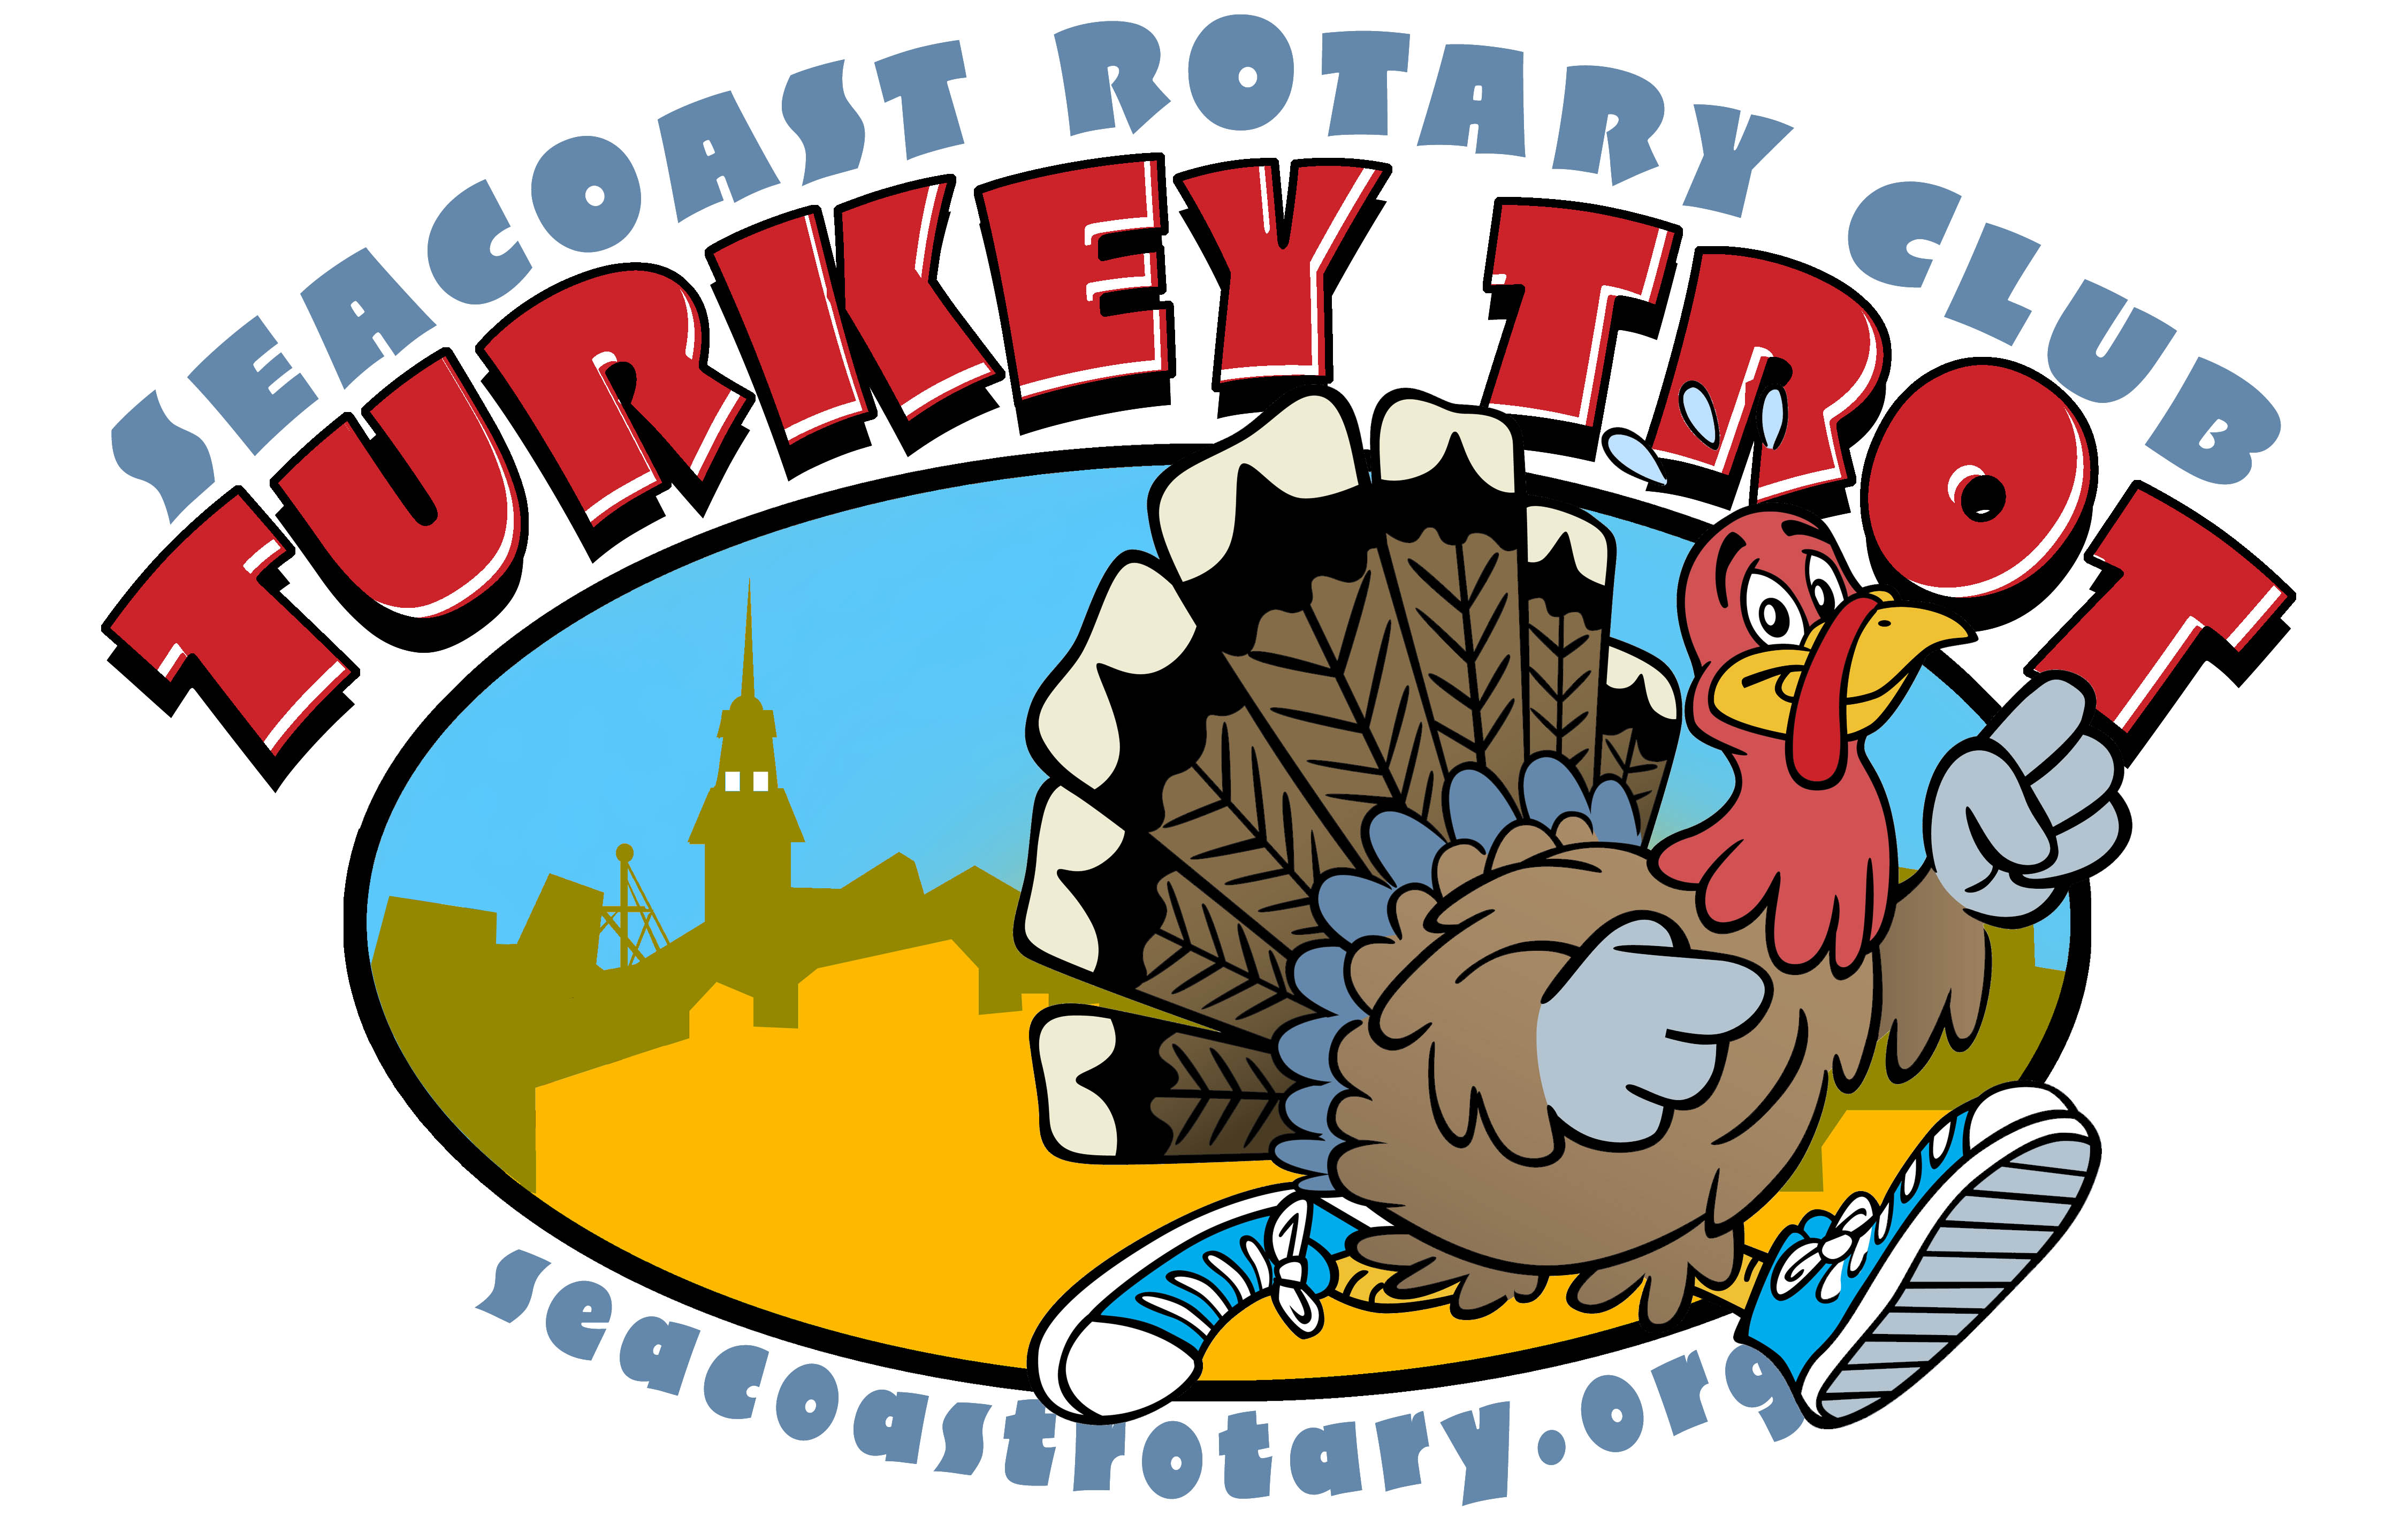 PHOTOS: Seacoast Rotary Turkey Trot 2013